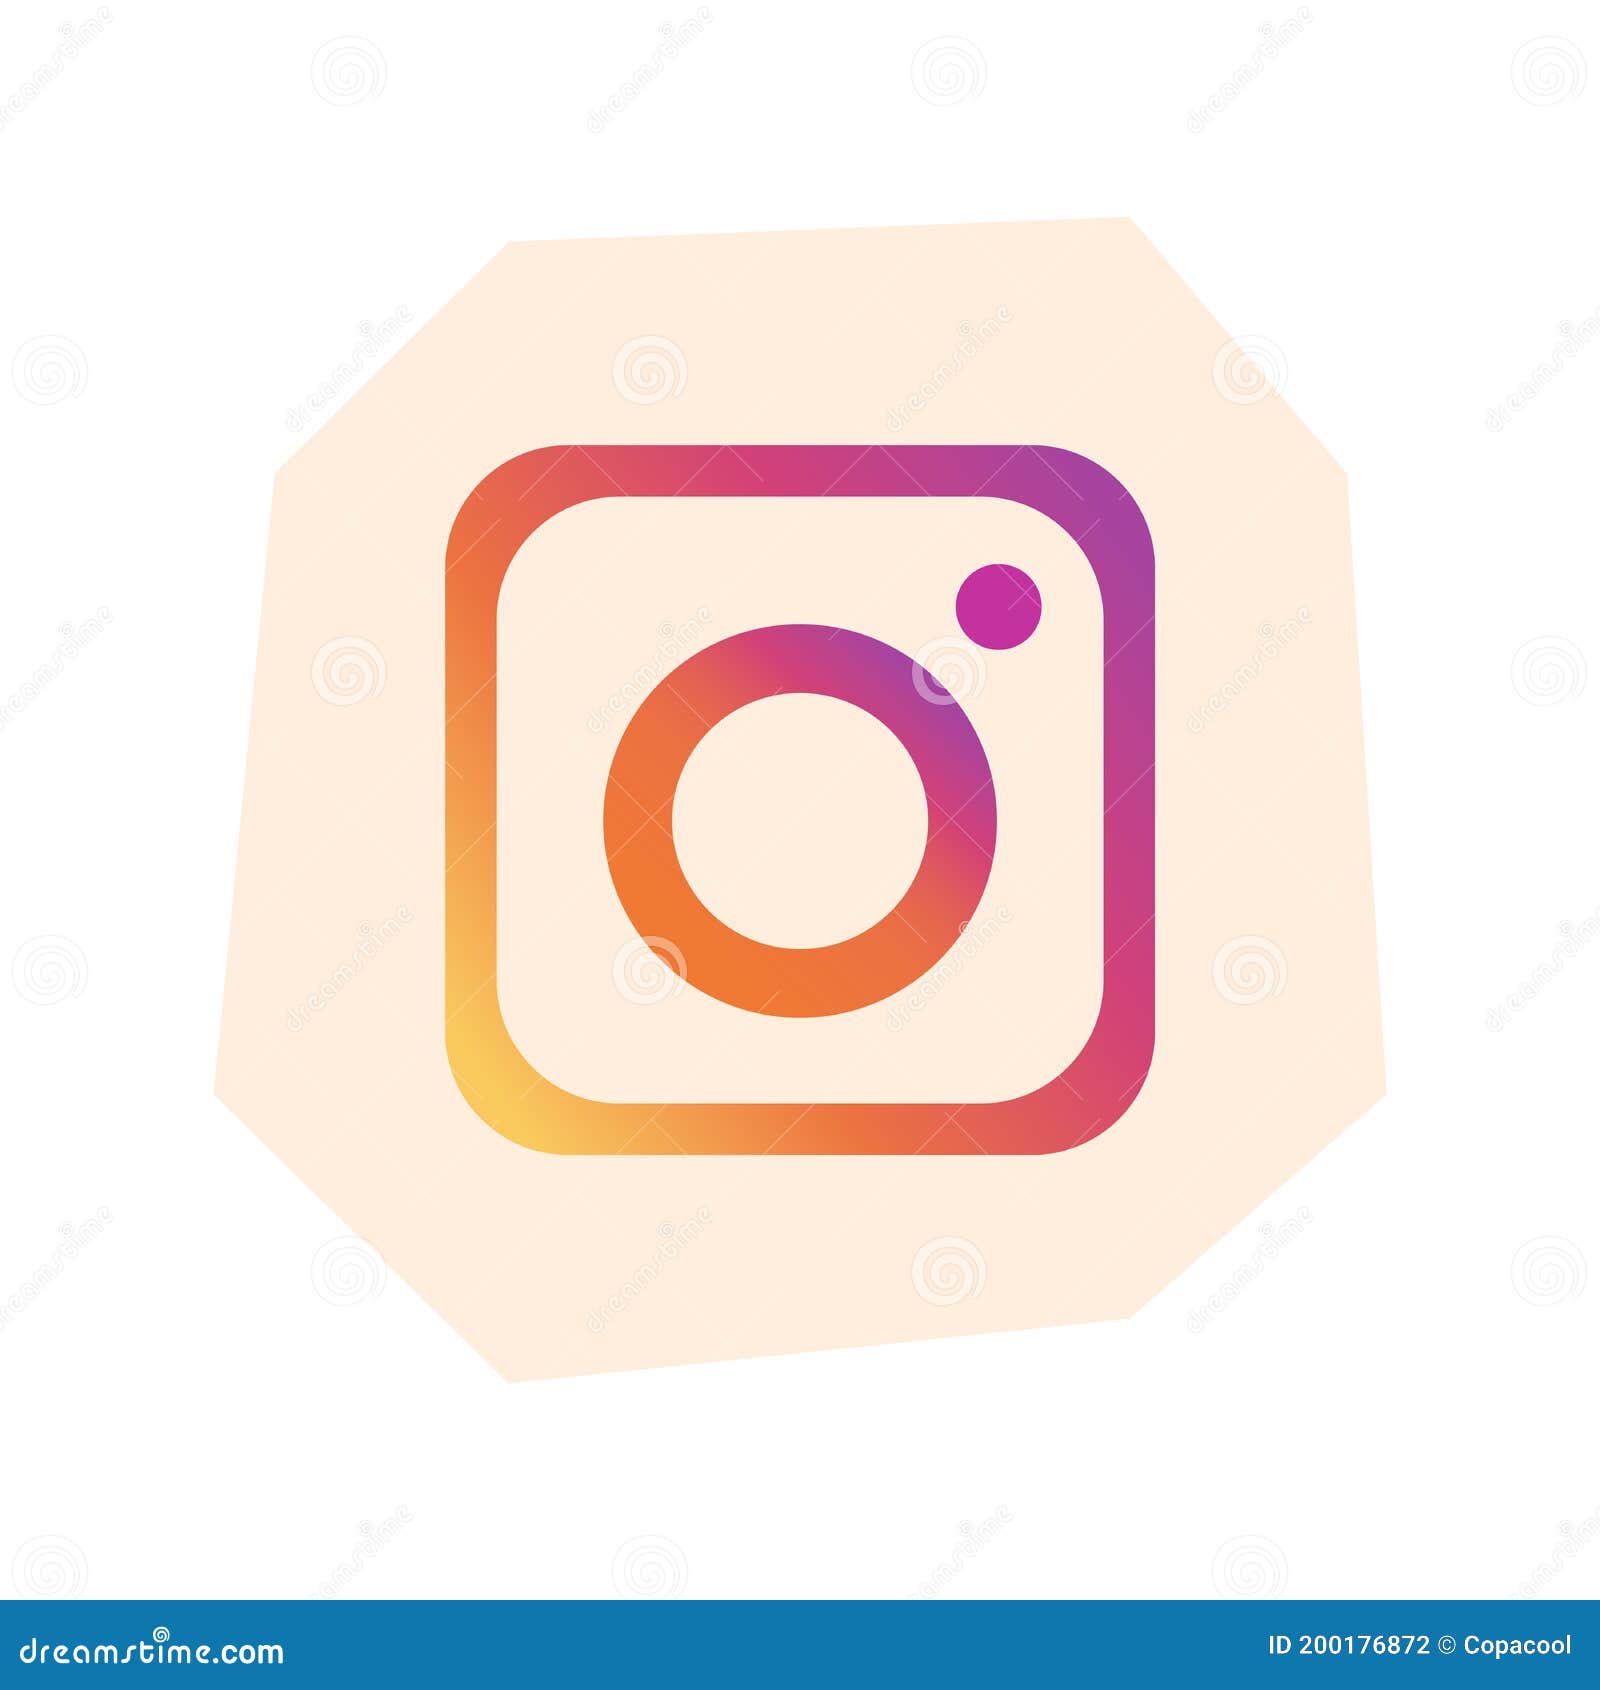 Instagram 3d Images - Free Download on Freepik